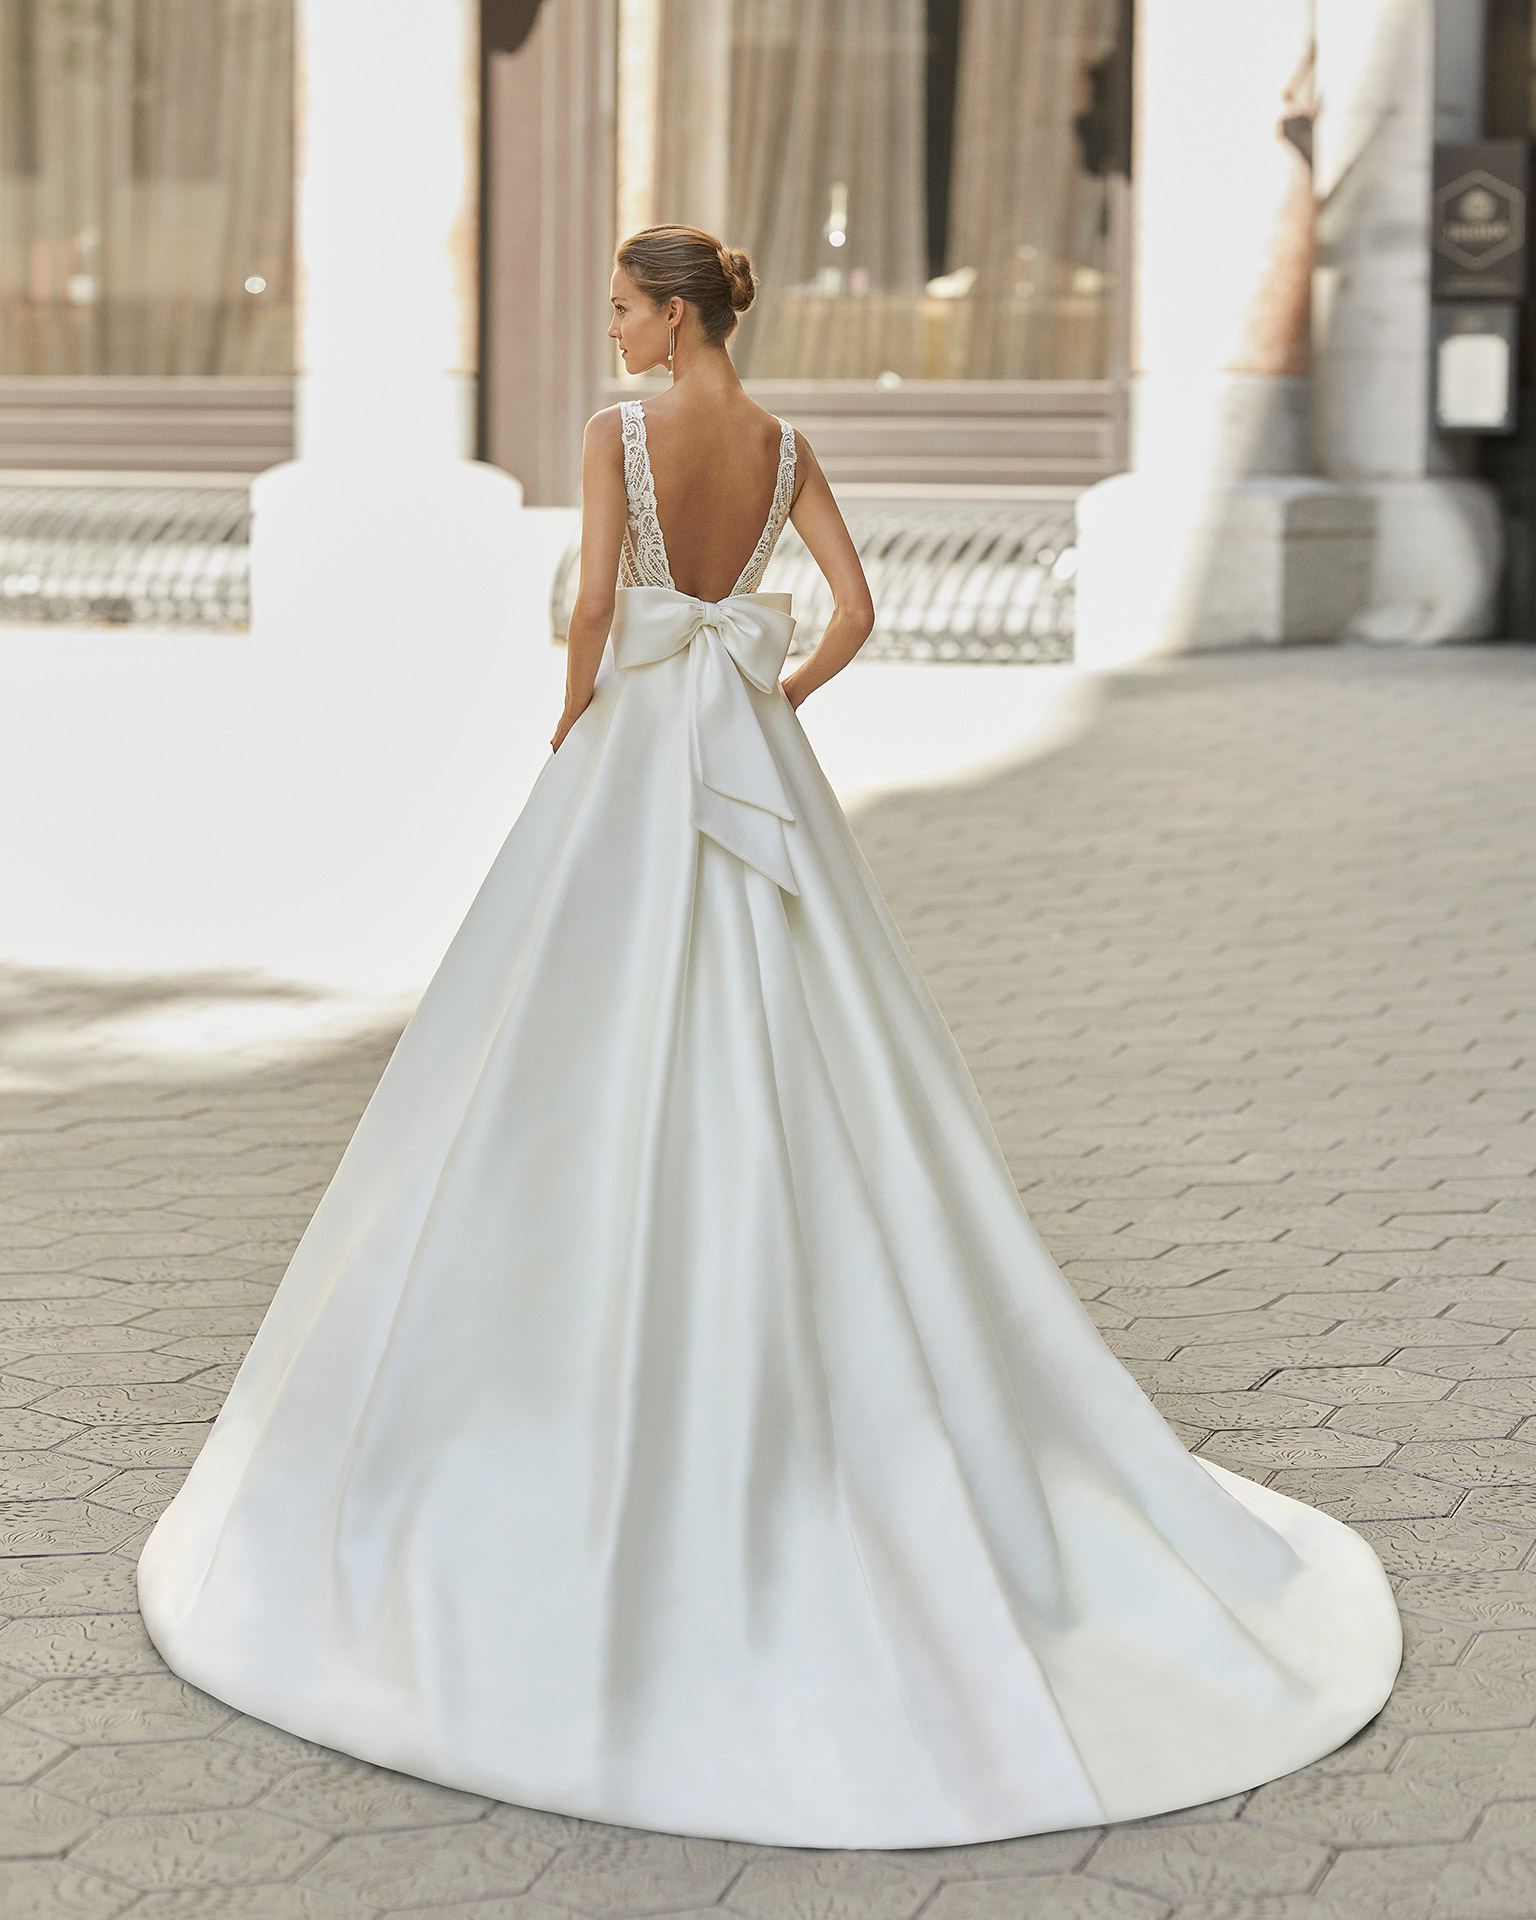 Vestido de novia de estilo clásico, raso, encaje y pedrería. Escote deep plunge y espalda escotada. Colección  2022.